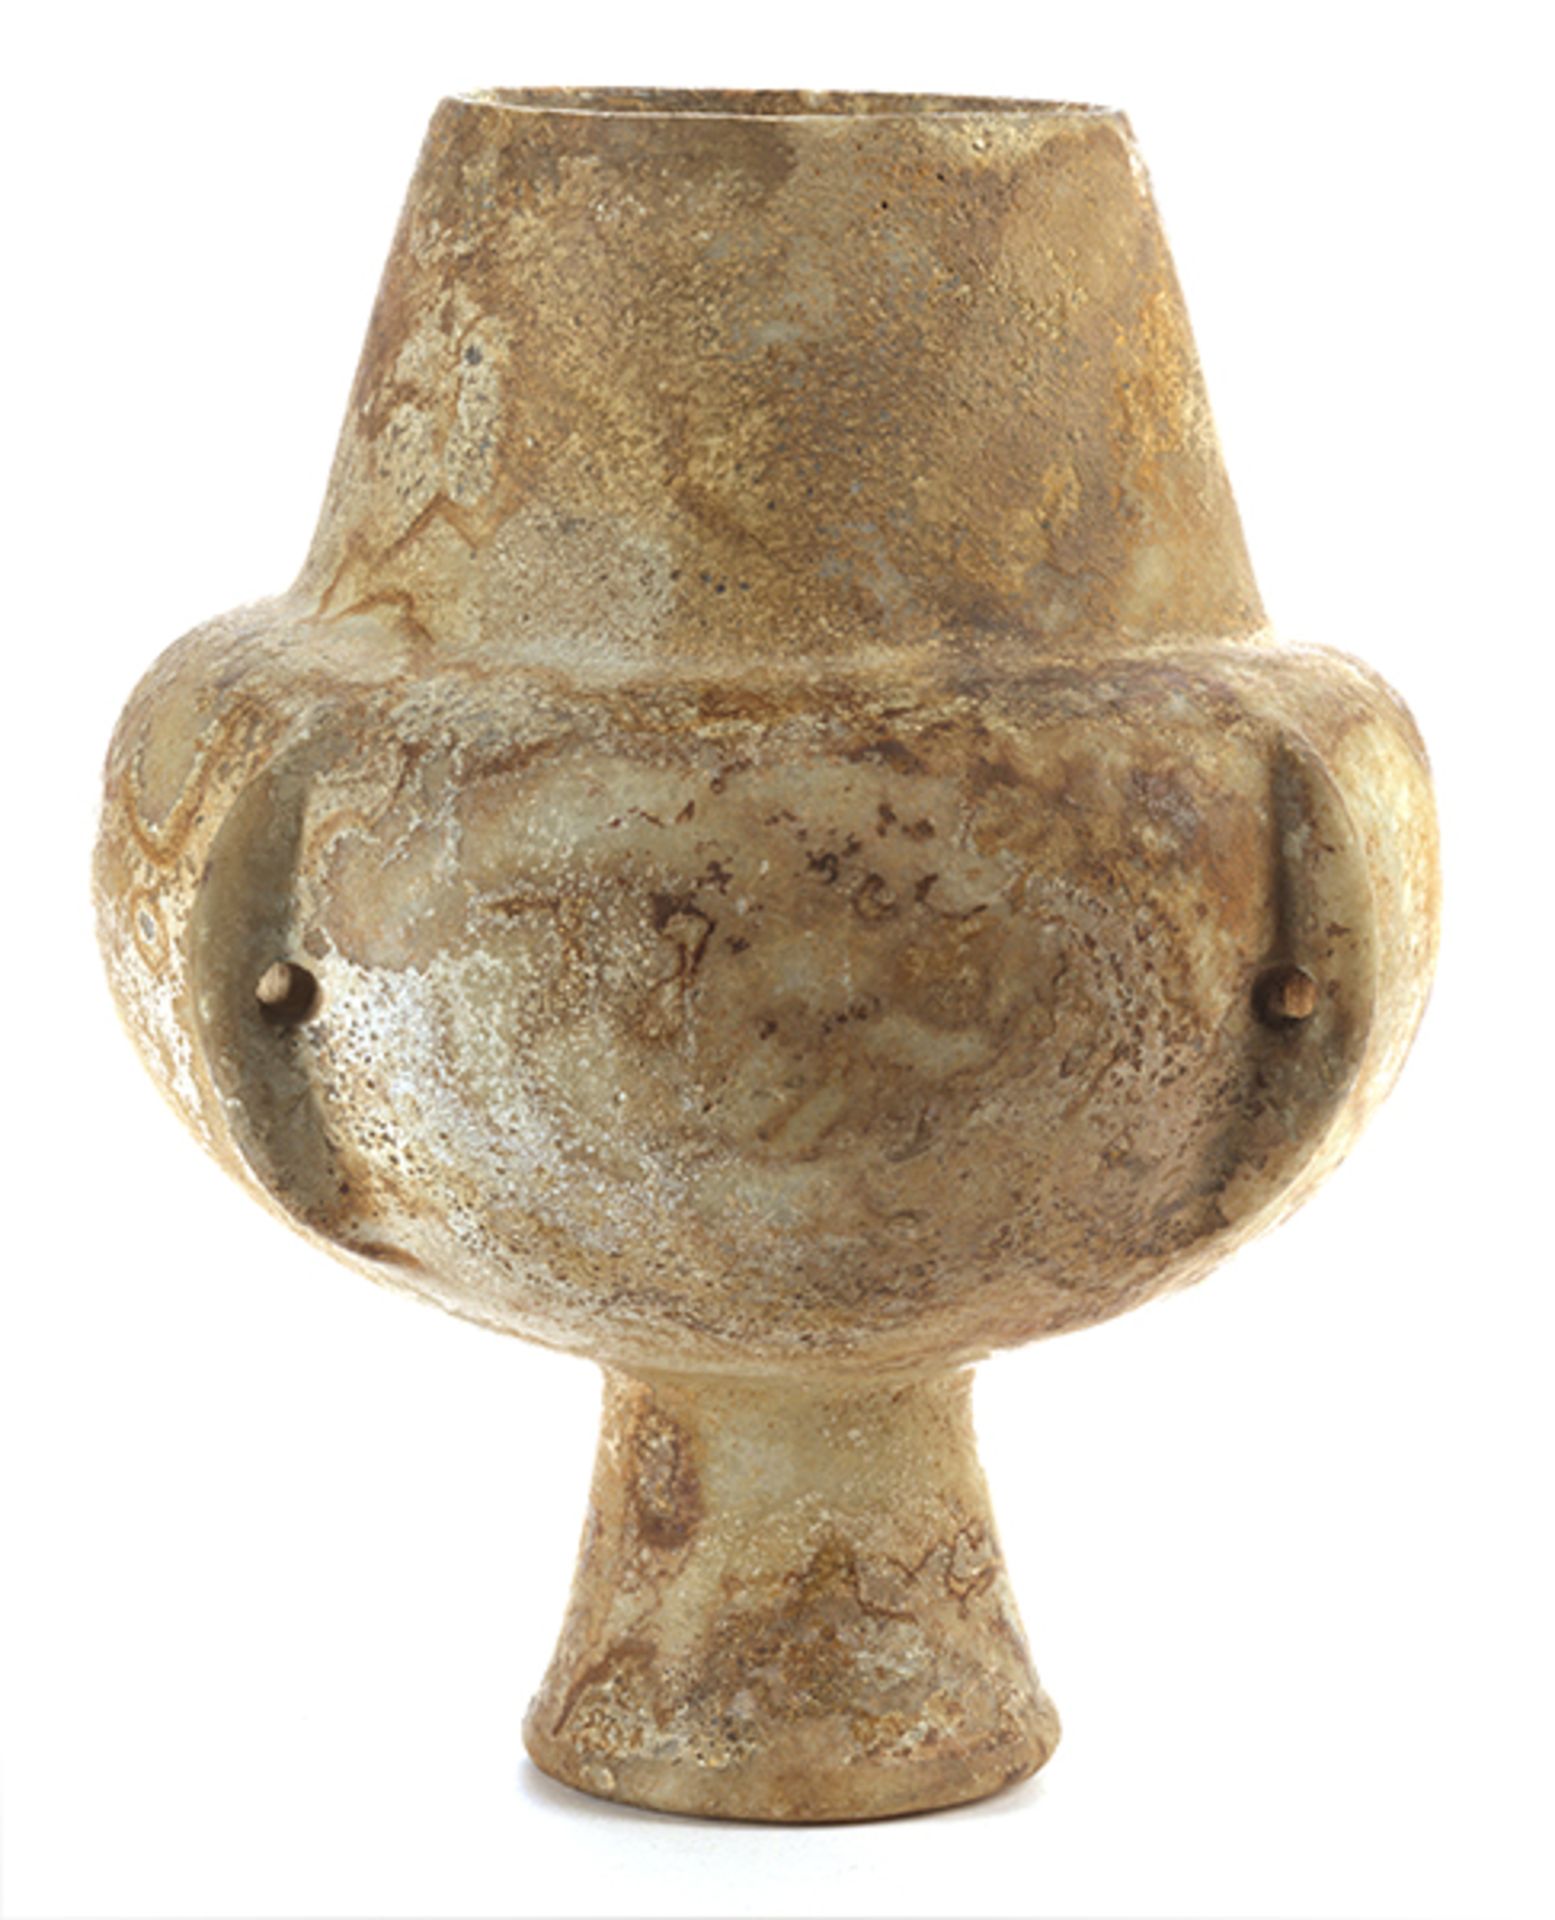 Kykladische Kandila "" Vierhenkel-Vase Höhe: 24 cm. Durchmesser: 20 cm. 3.200 "" 2.800 v. Chr. - Bild 2 aus 6